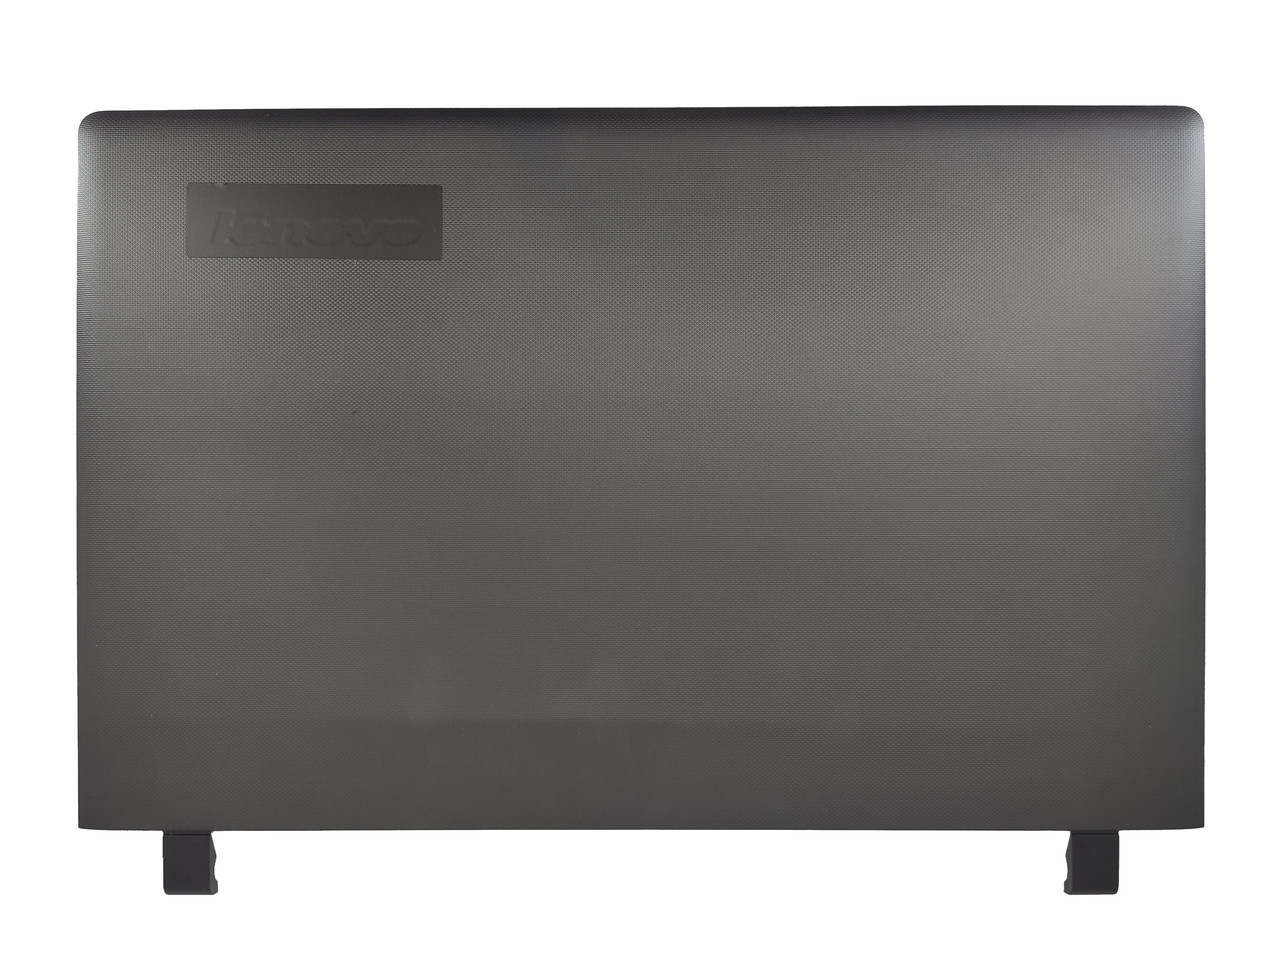 Крышка матрицы Lenovo IdeaPad 100-15IBY, B50-10, черная (с разбора)